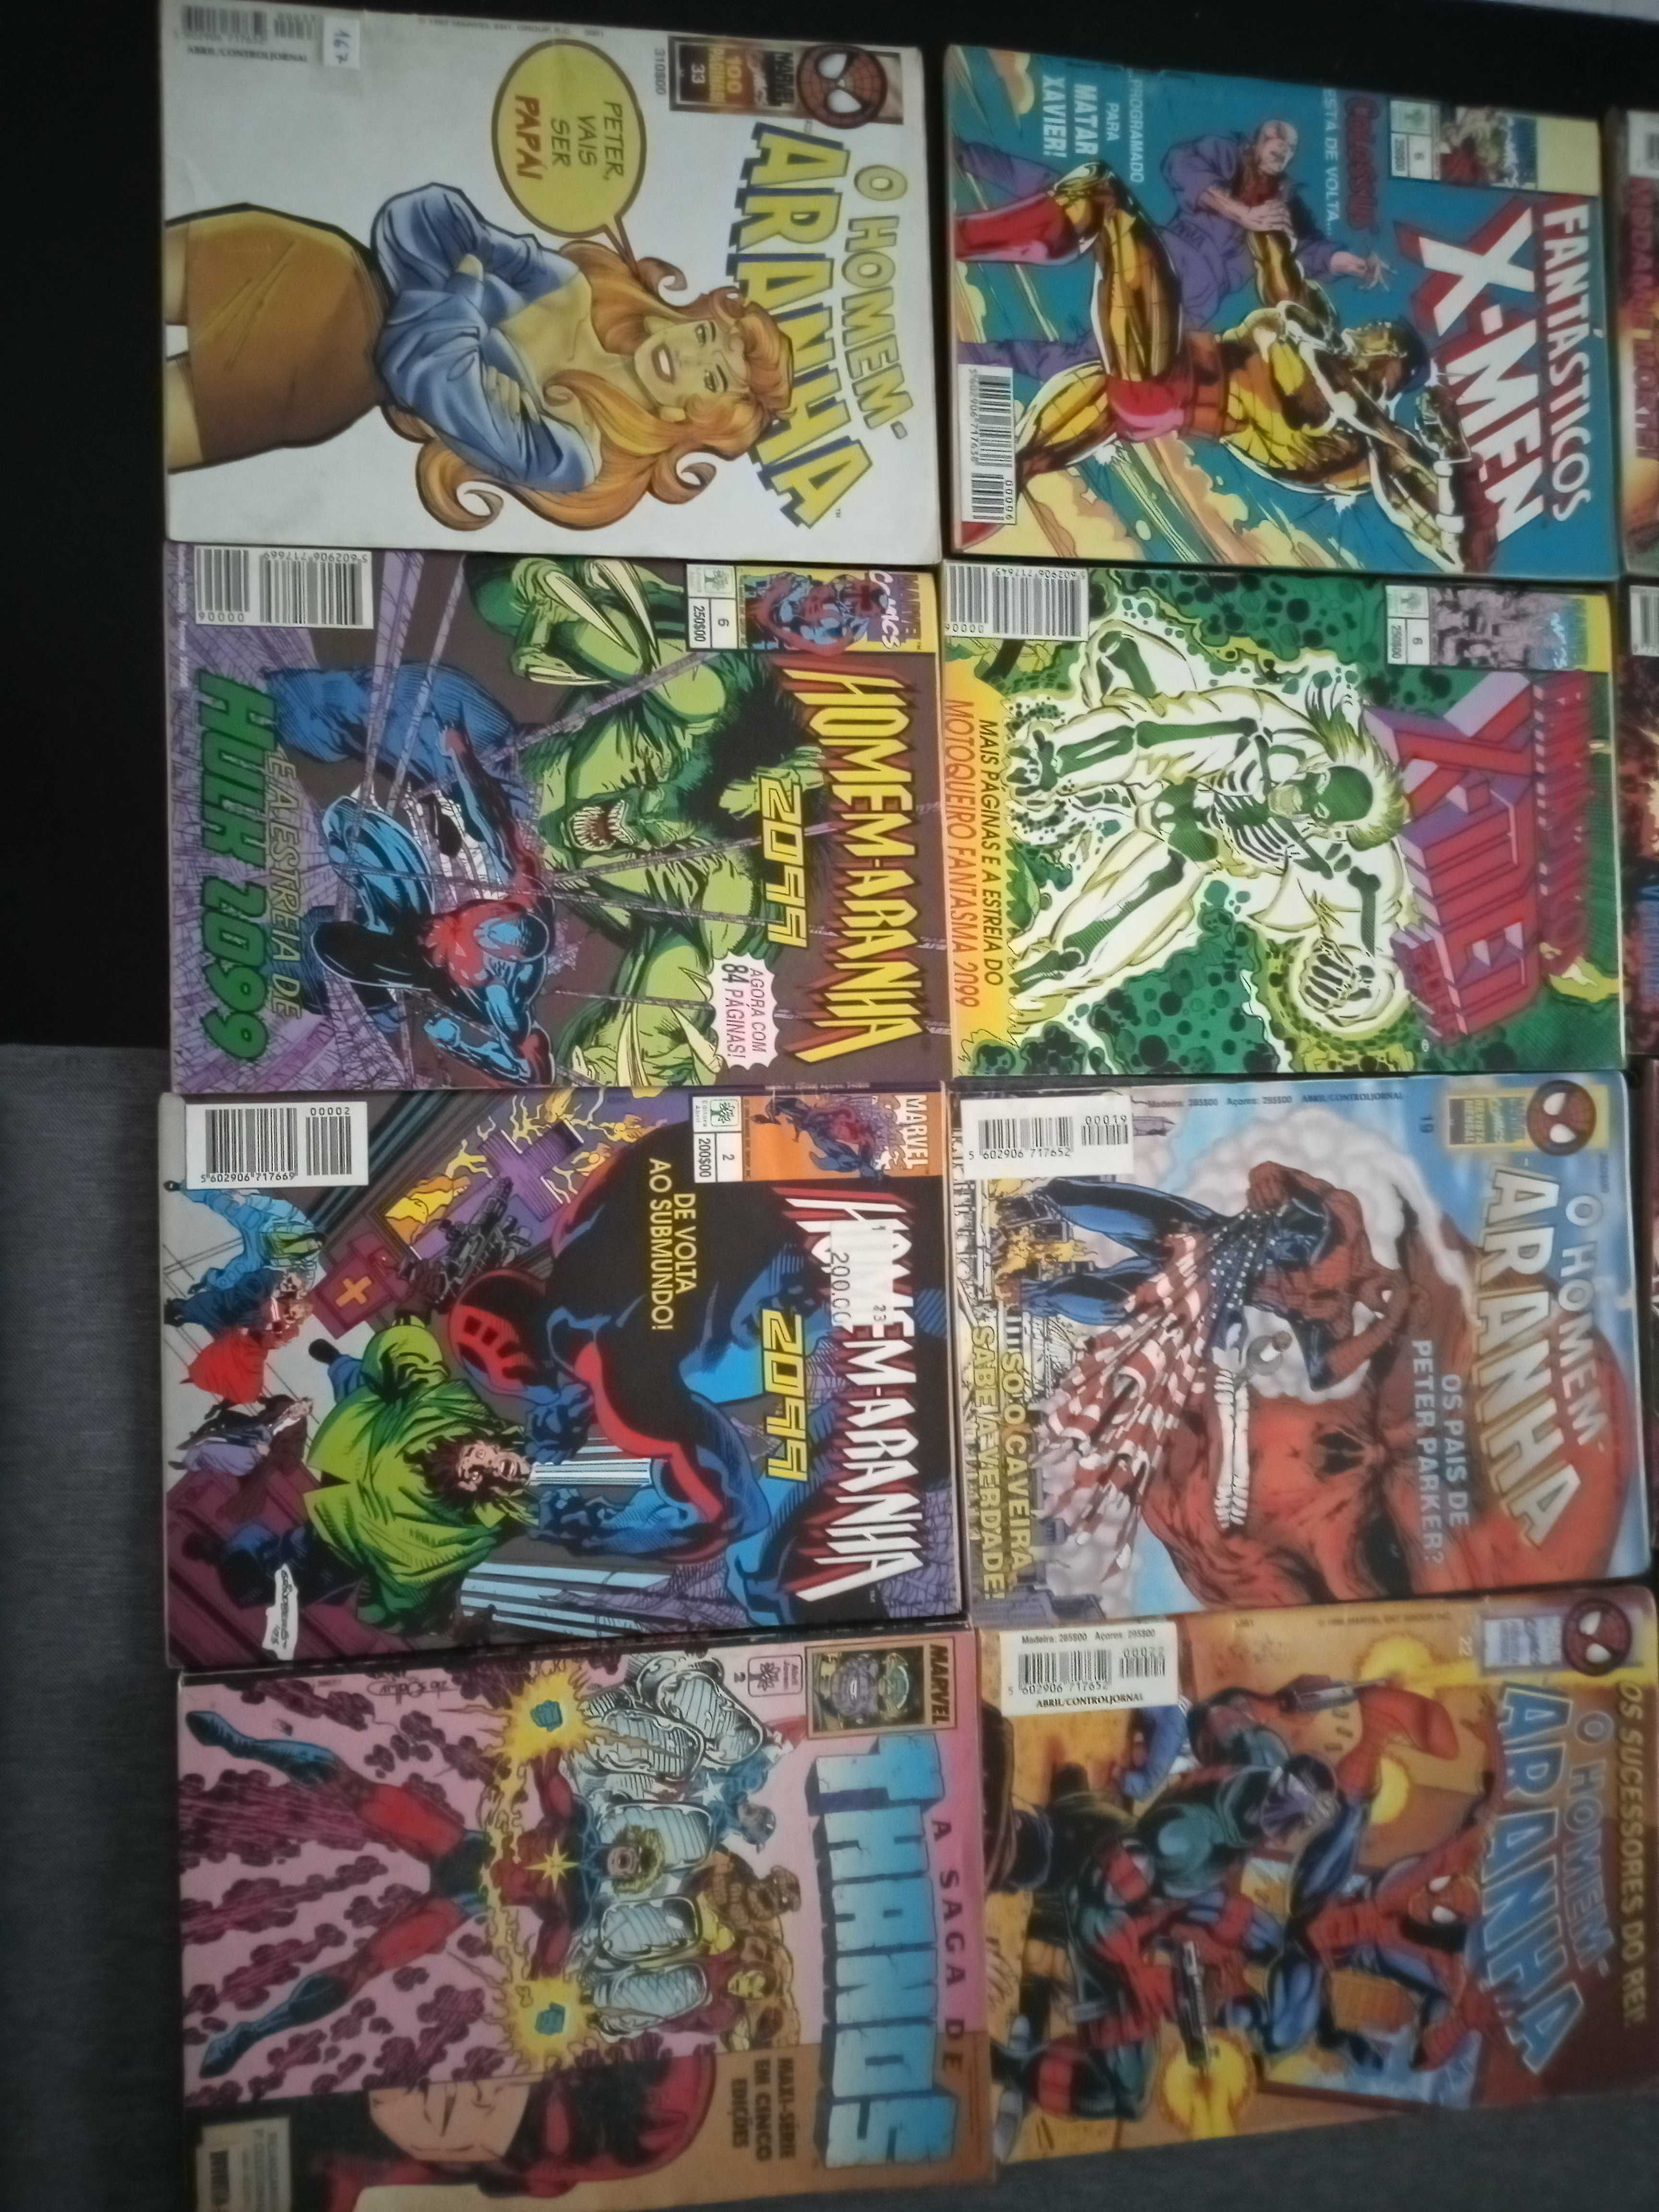 Livros revistas cómica Marvel  homem-aranha Wolverine outros